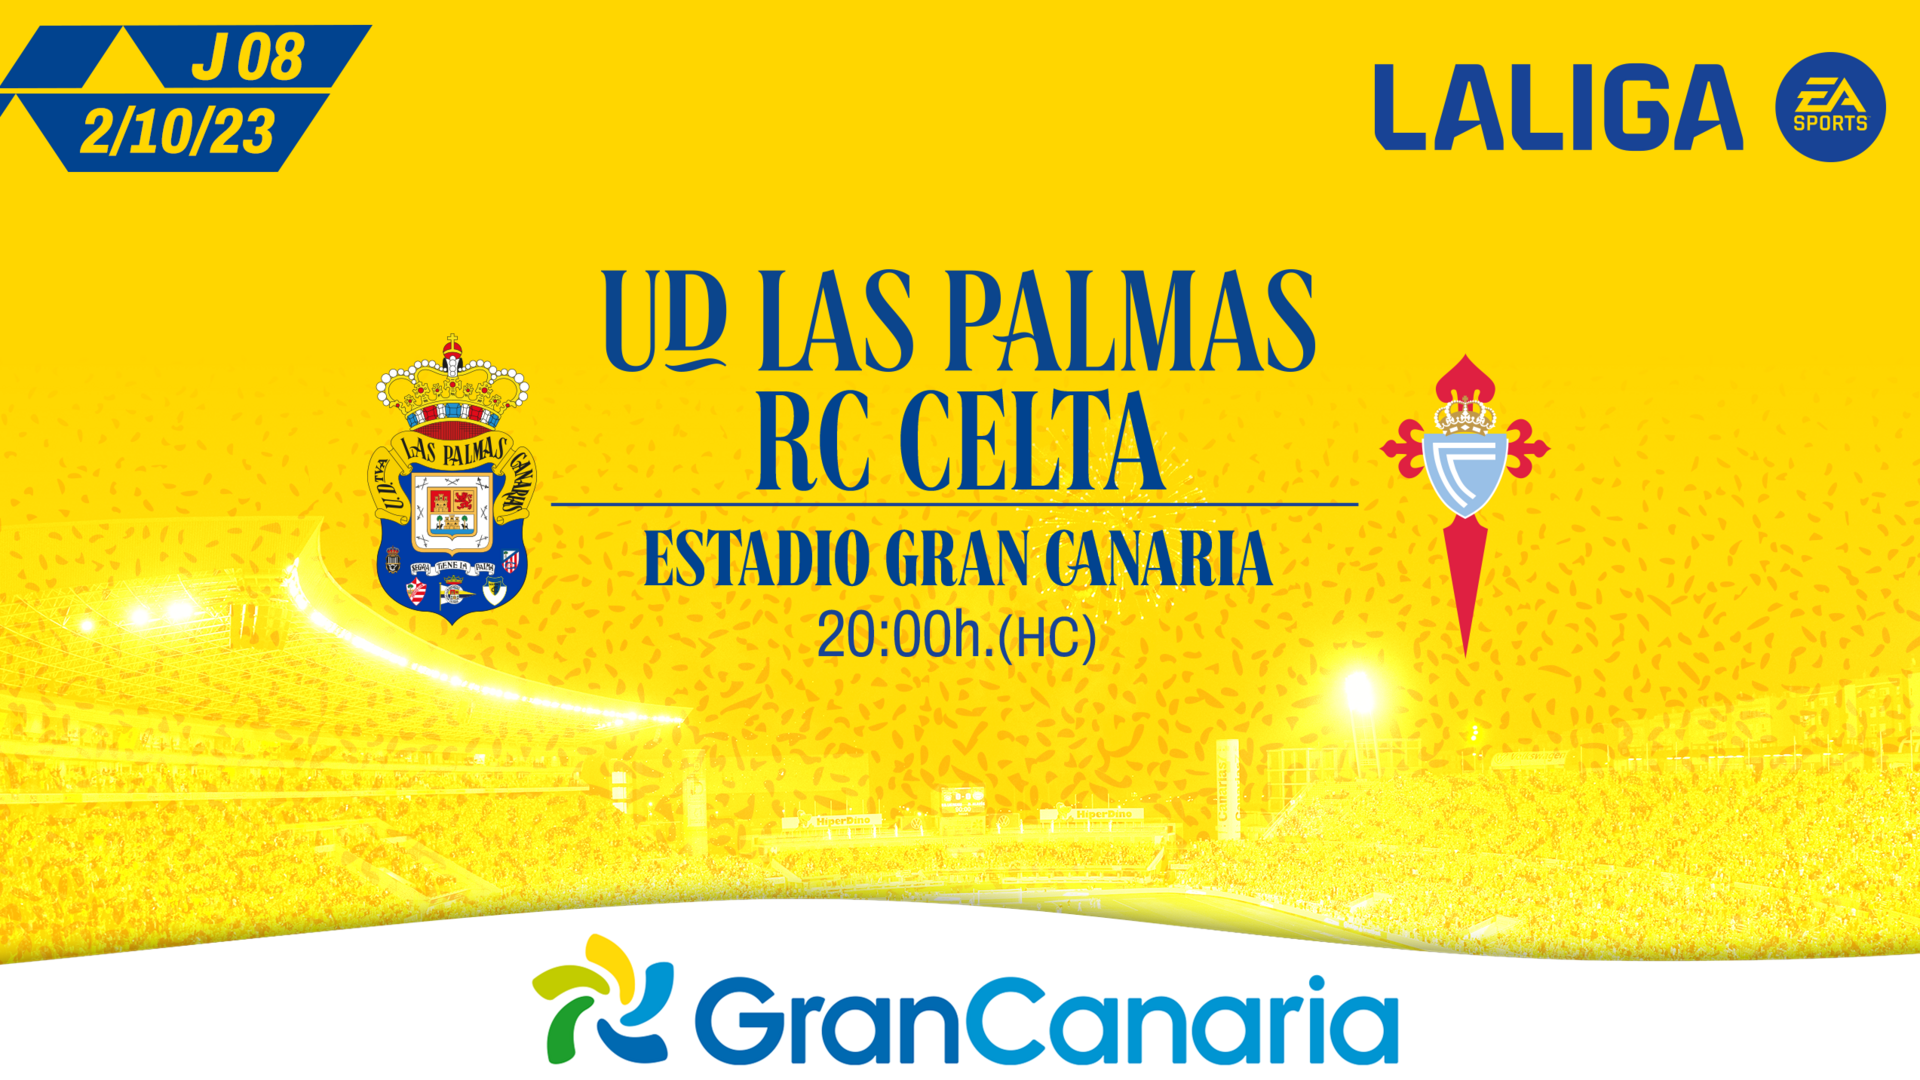 Se inicia la venta online de entradas para el partido UD Las Palmas vs RC Celta